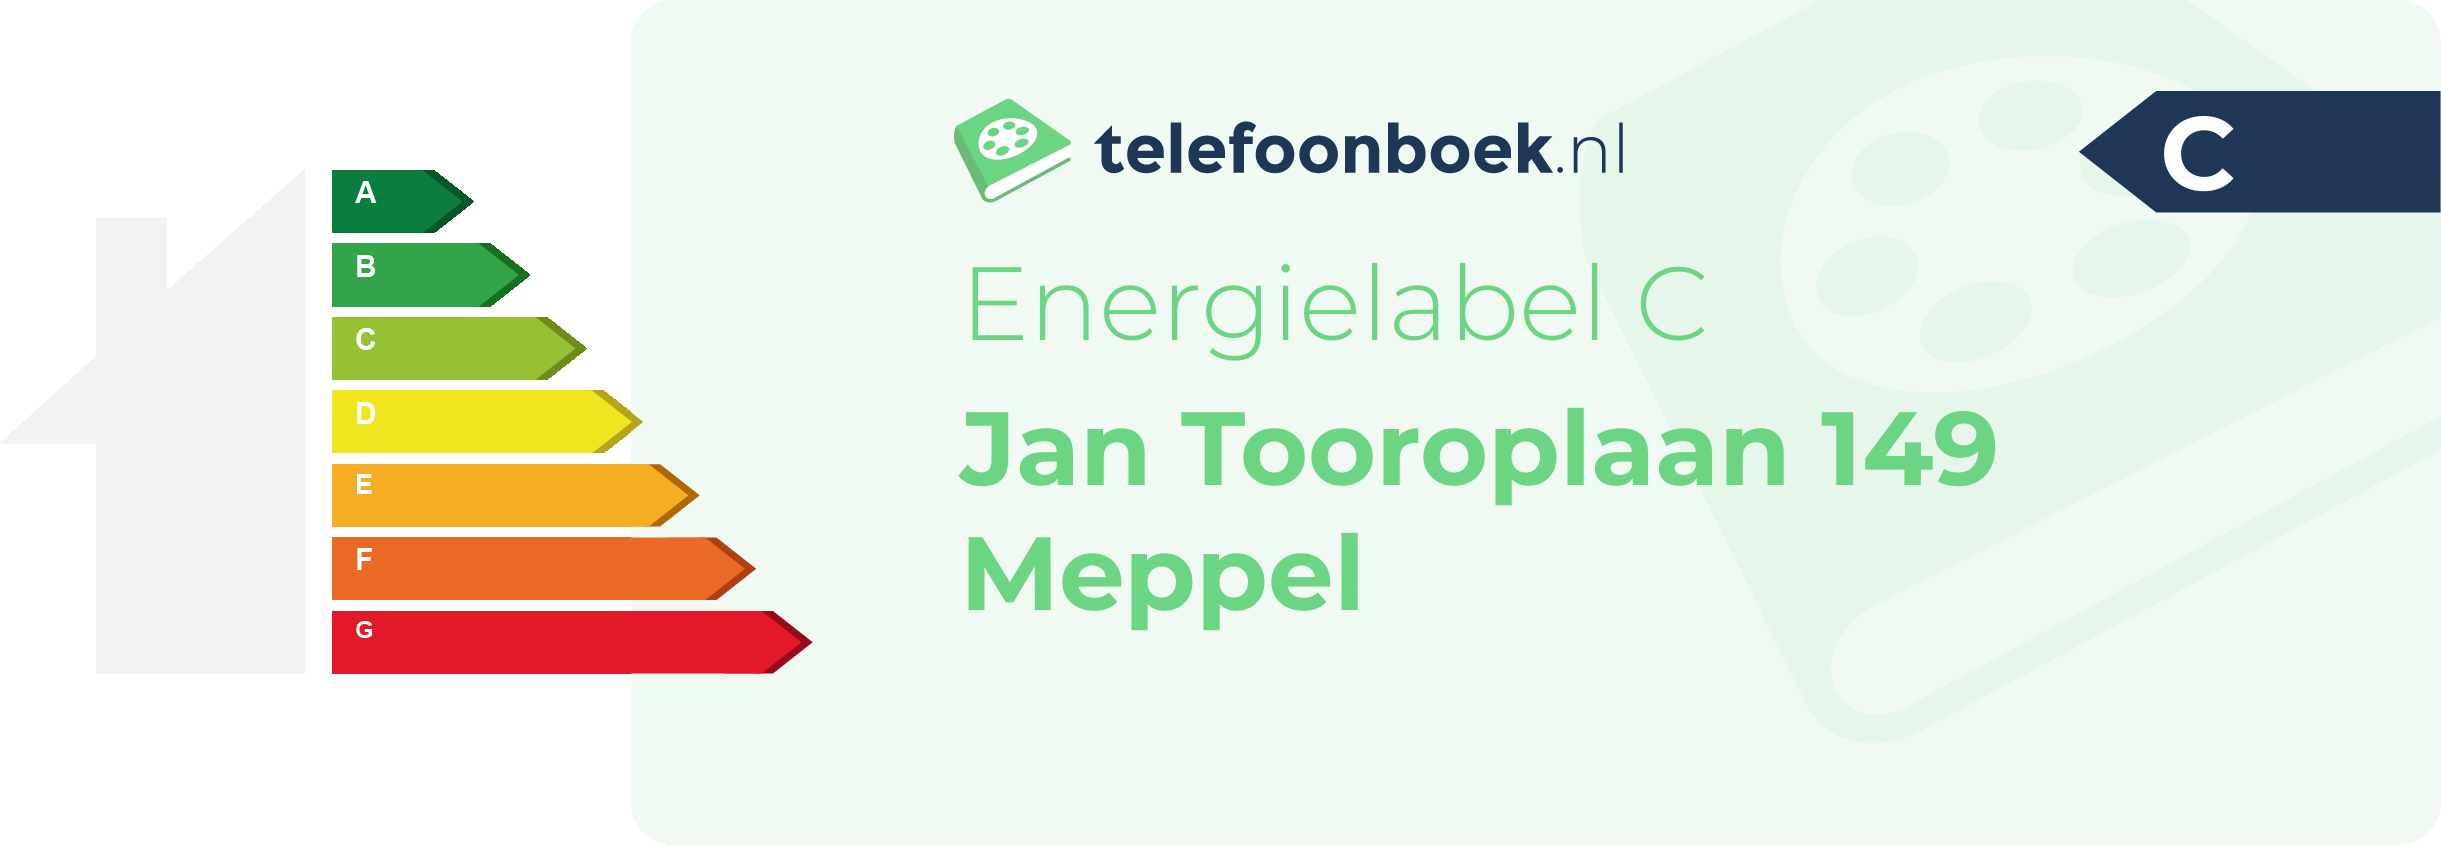 Energielabel Jan Tooroplaan 149 Meppel